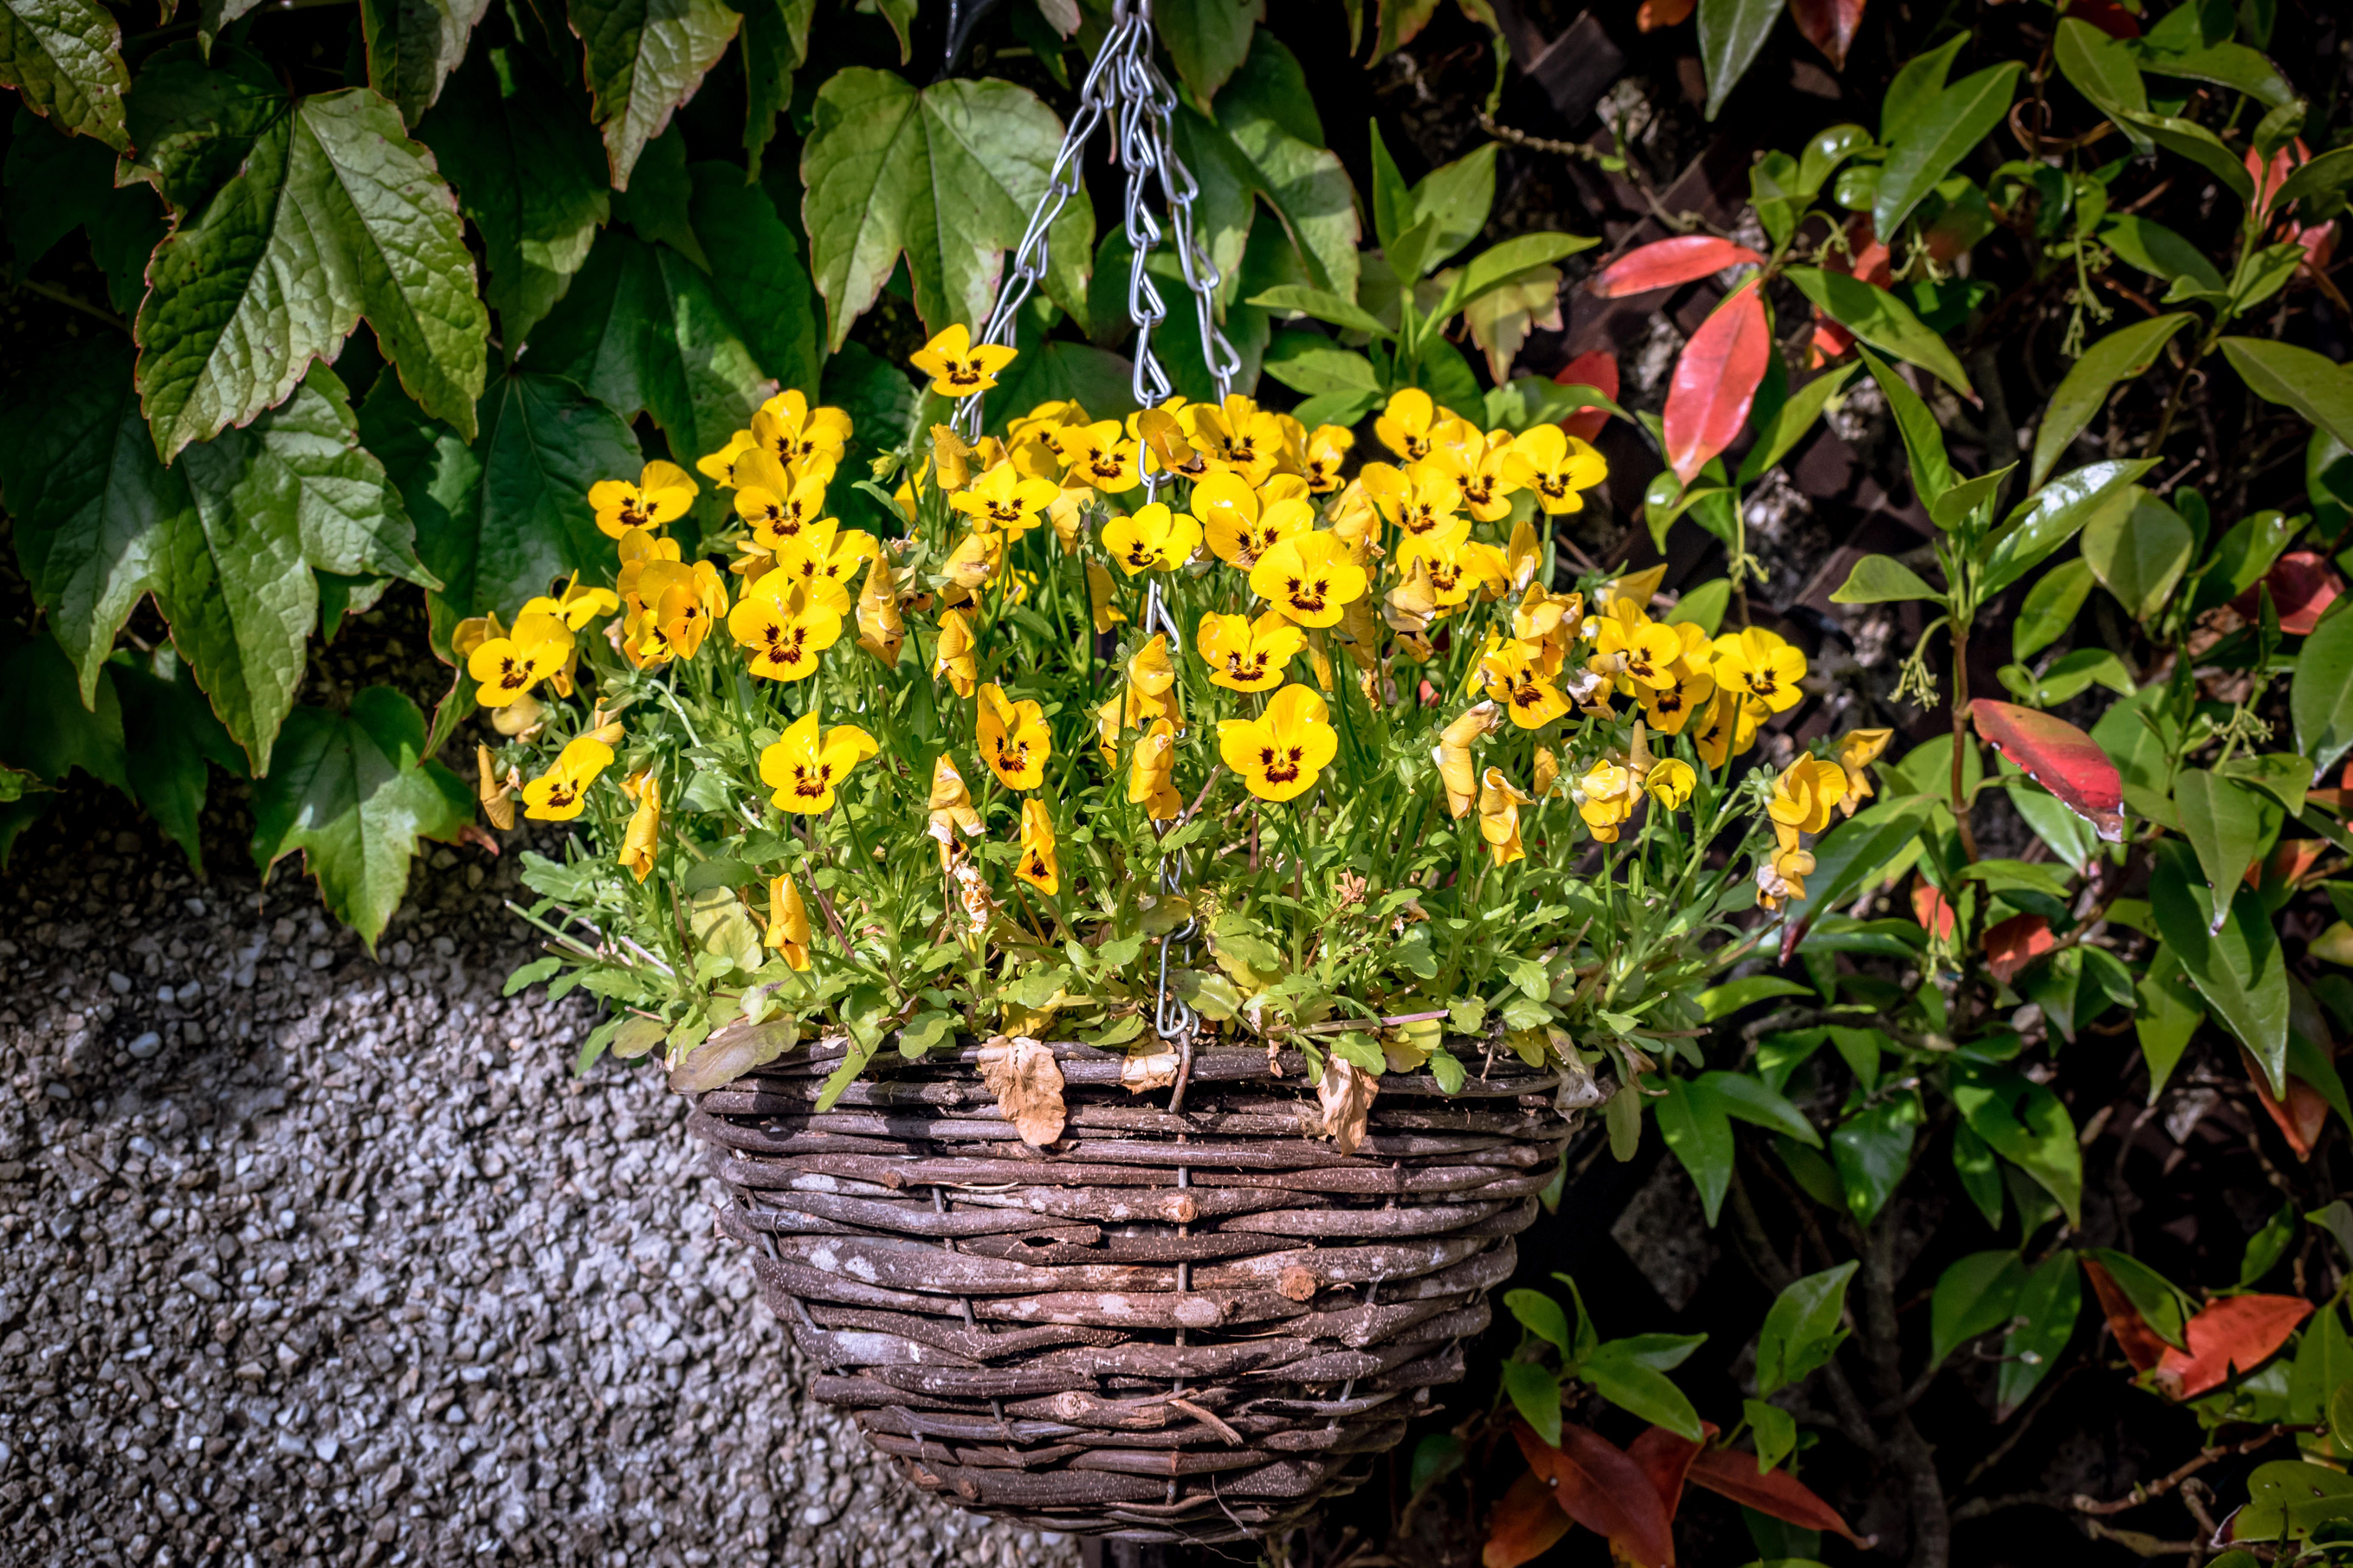 Yellow pansies in hanging baskets